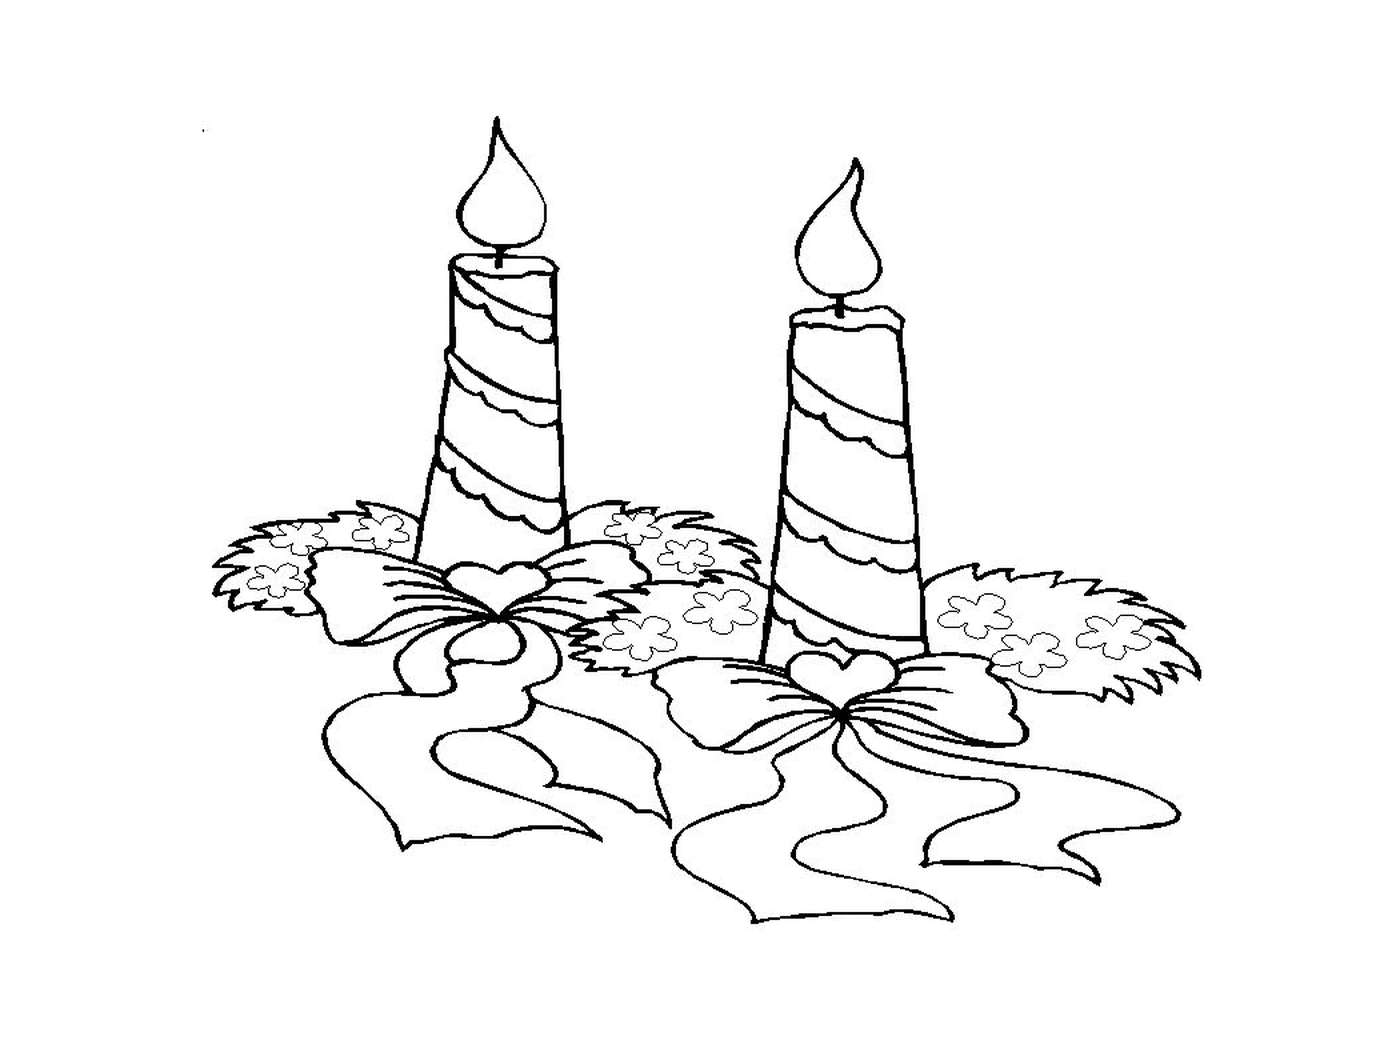  Duas velas acesas colocadas no chão 